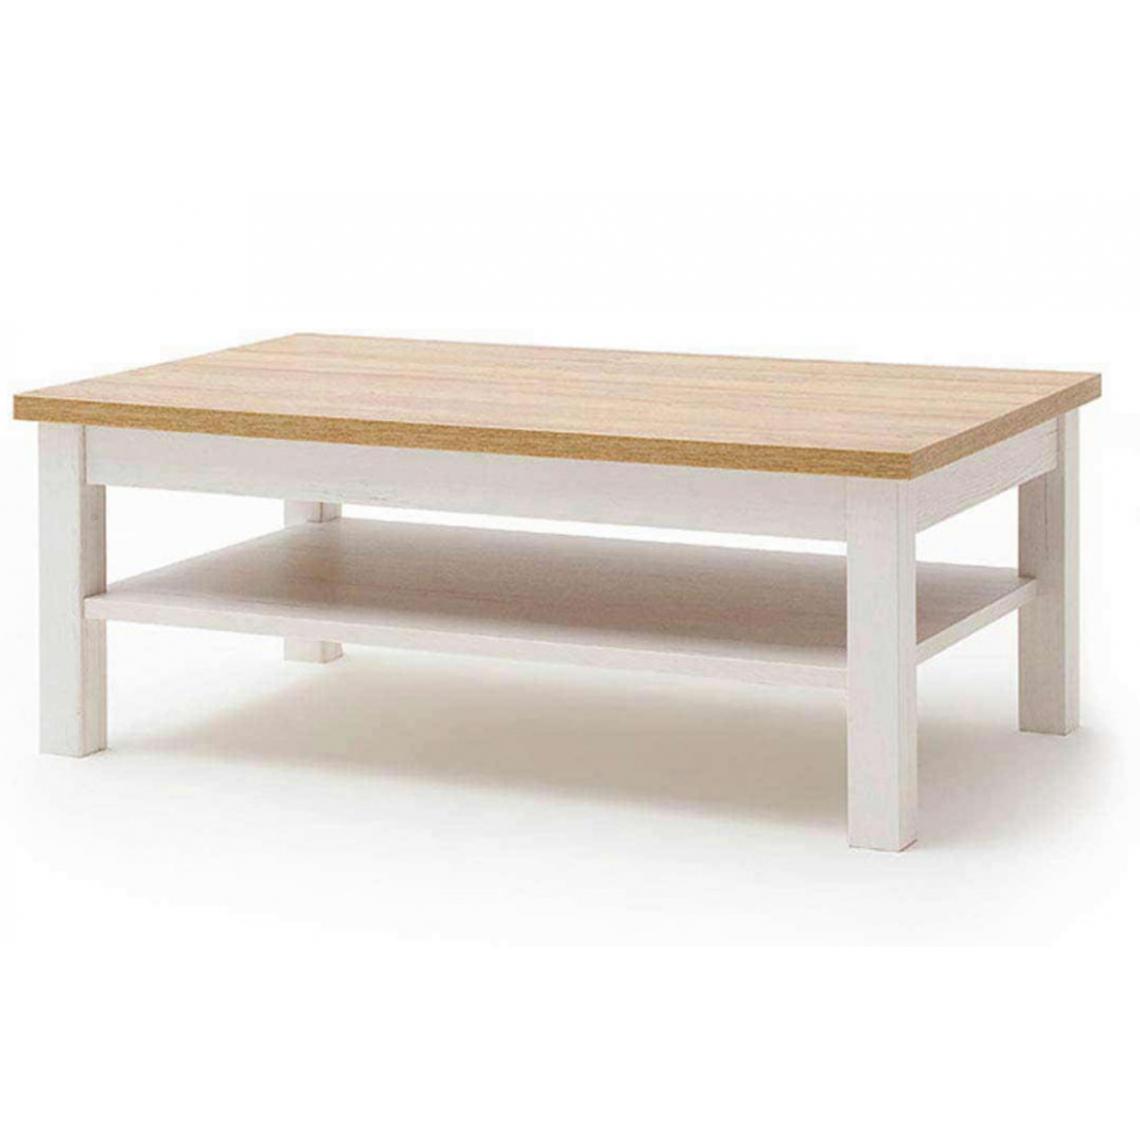 Pegane - Table basse avec rangements en bois coloris blanc / chêne - L.114 x H.46 x P.70 cm - Tables basses